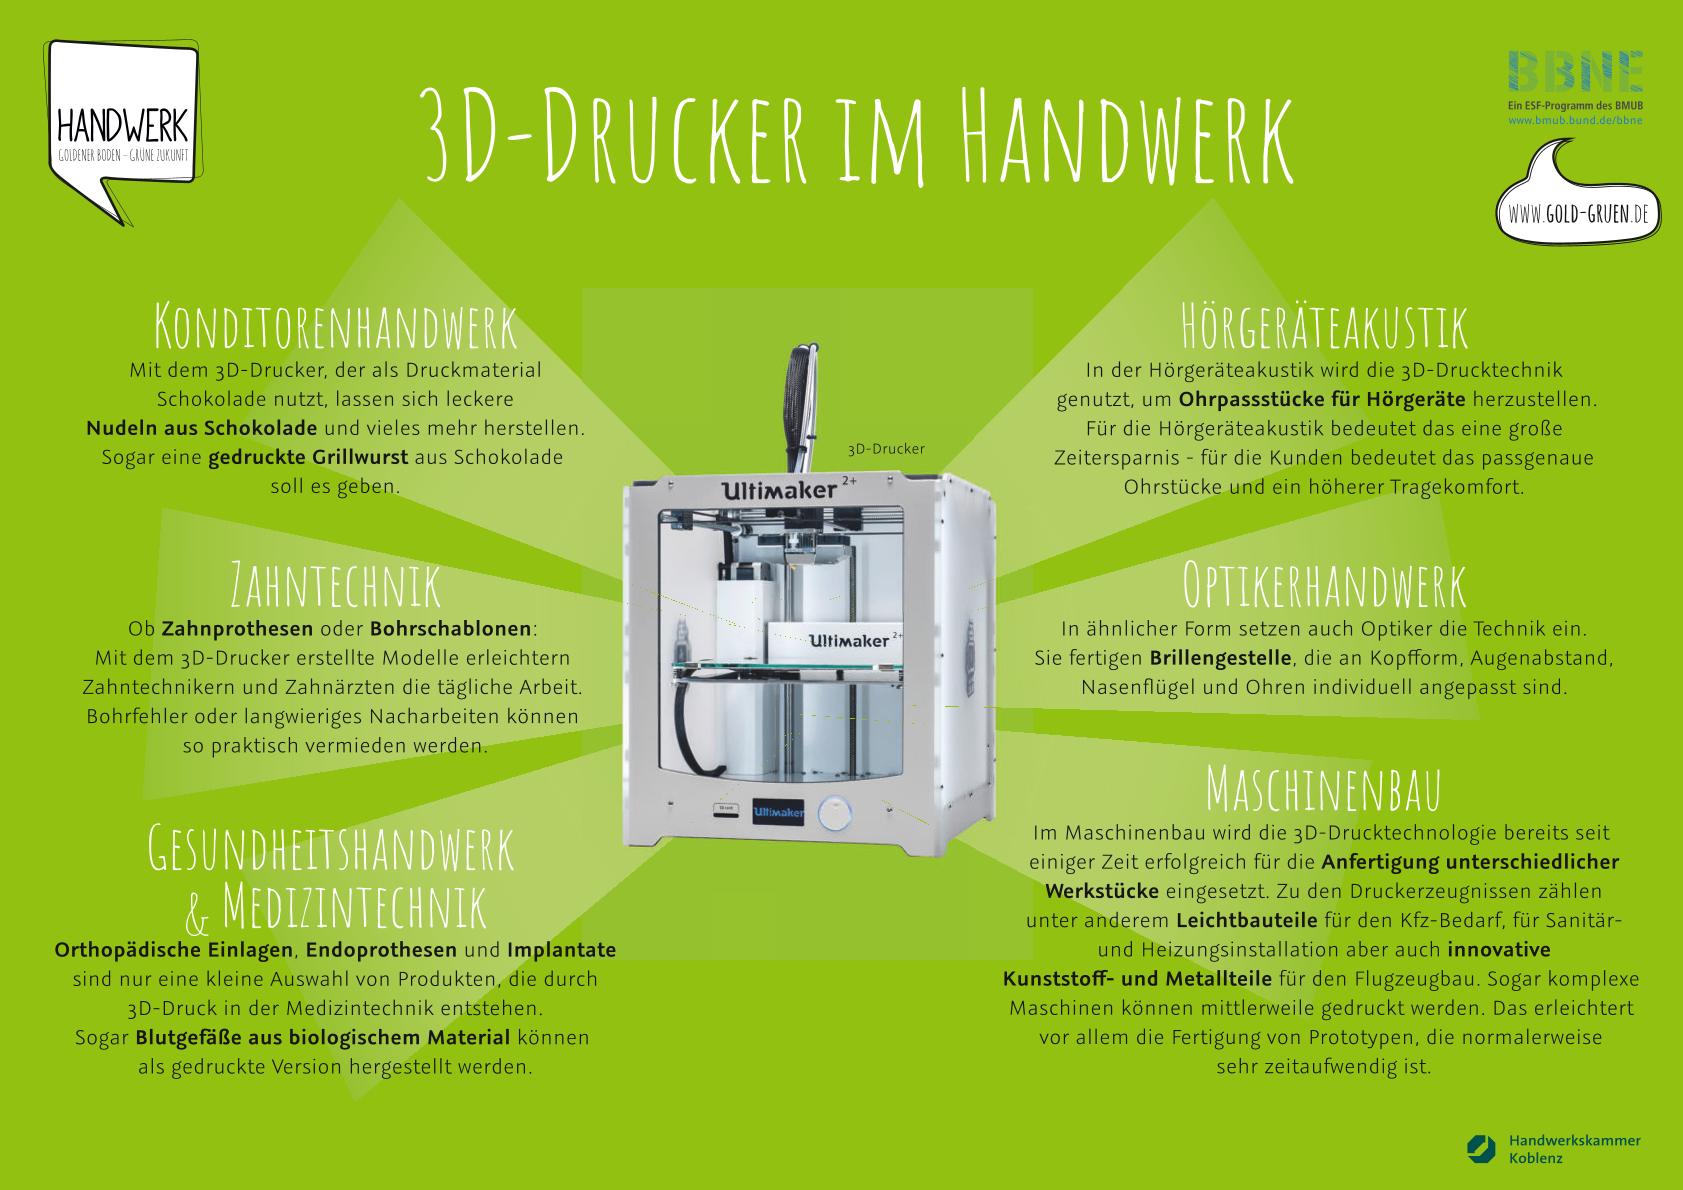 Grafik: Einsatz von 3D-Druckern im Handwerk